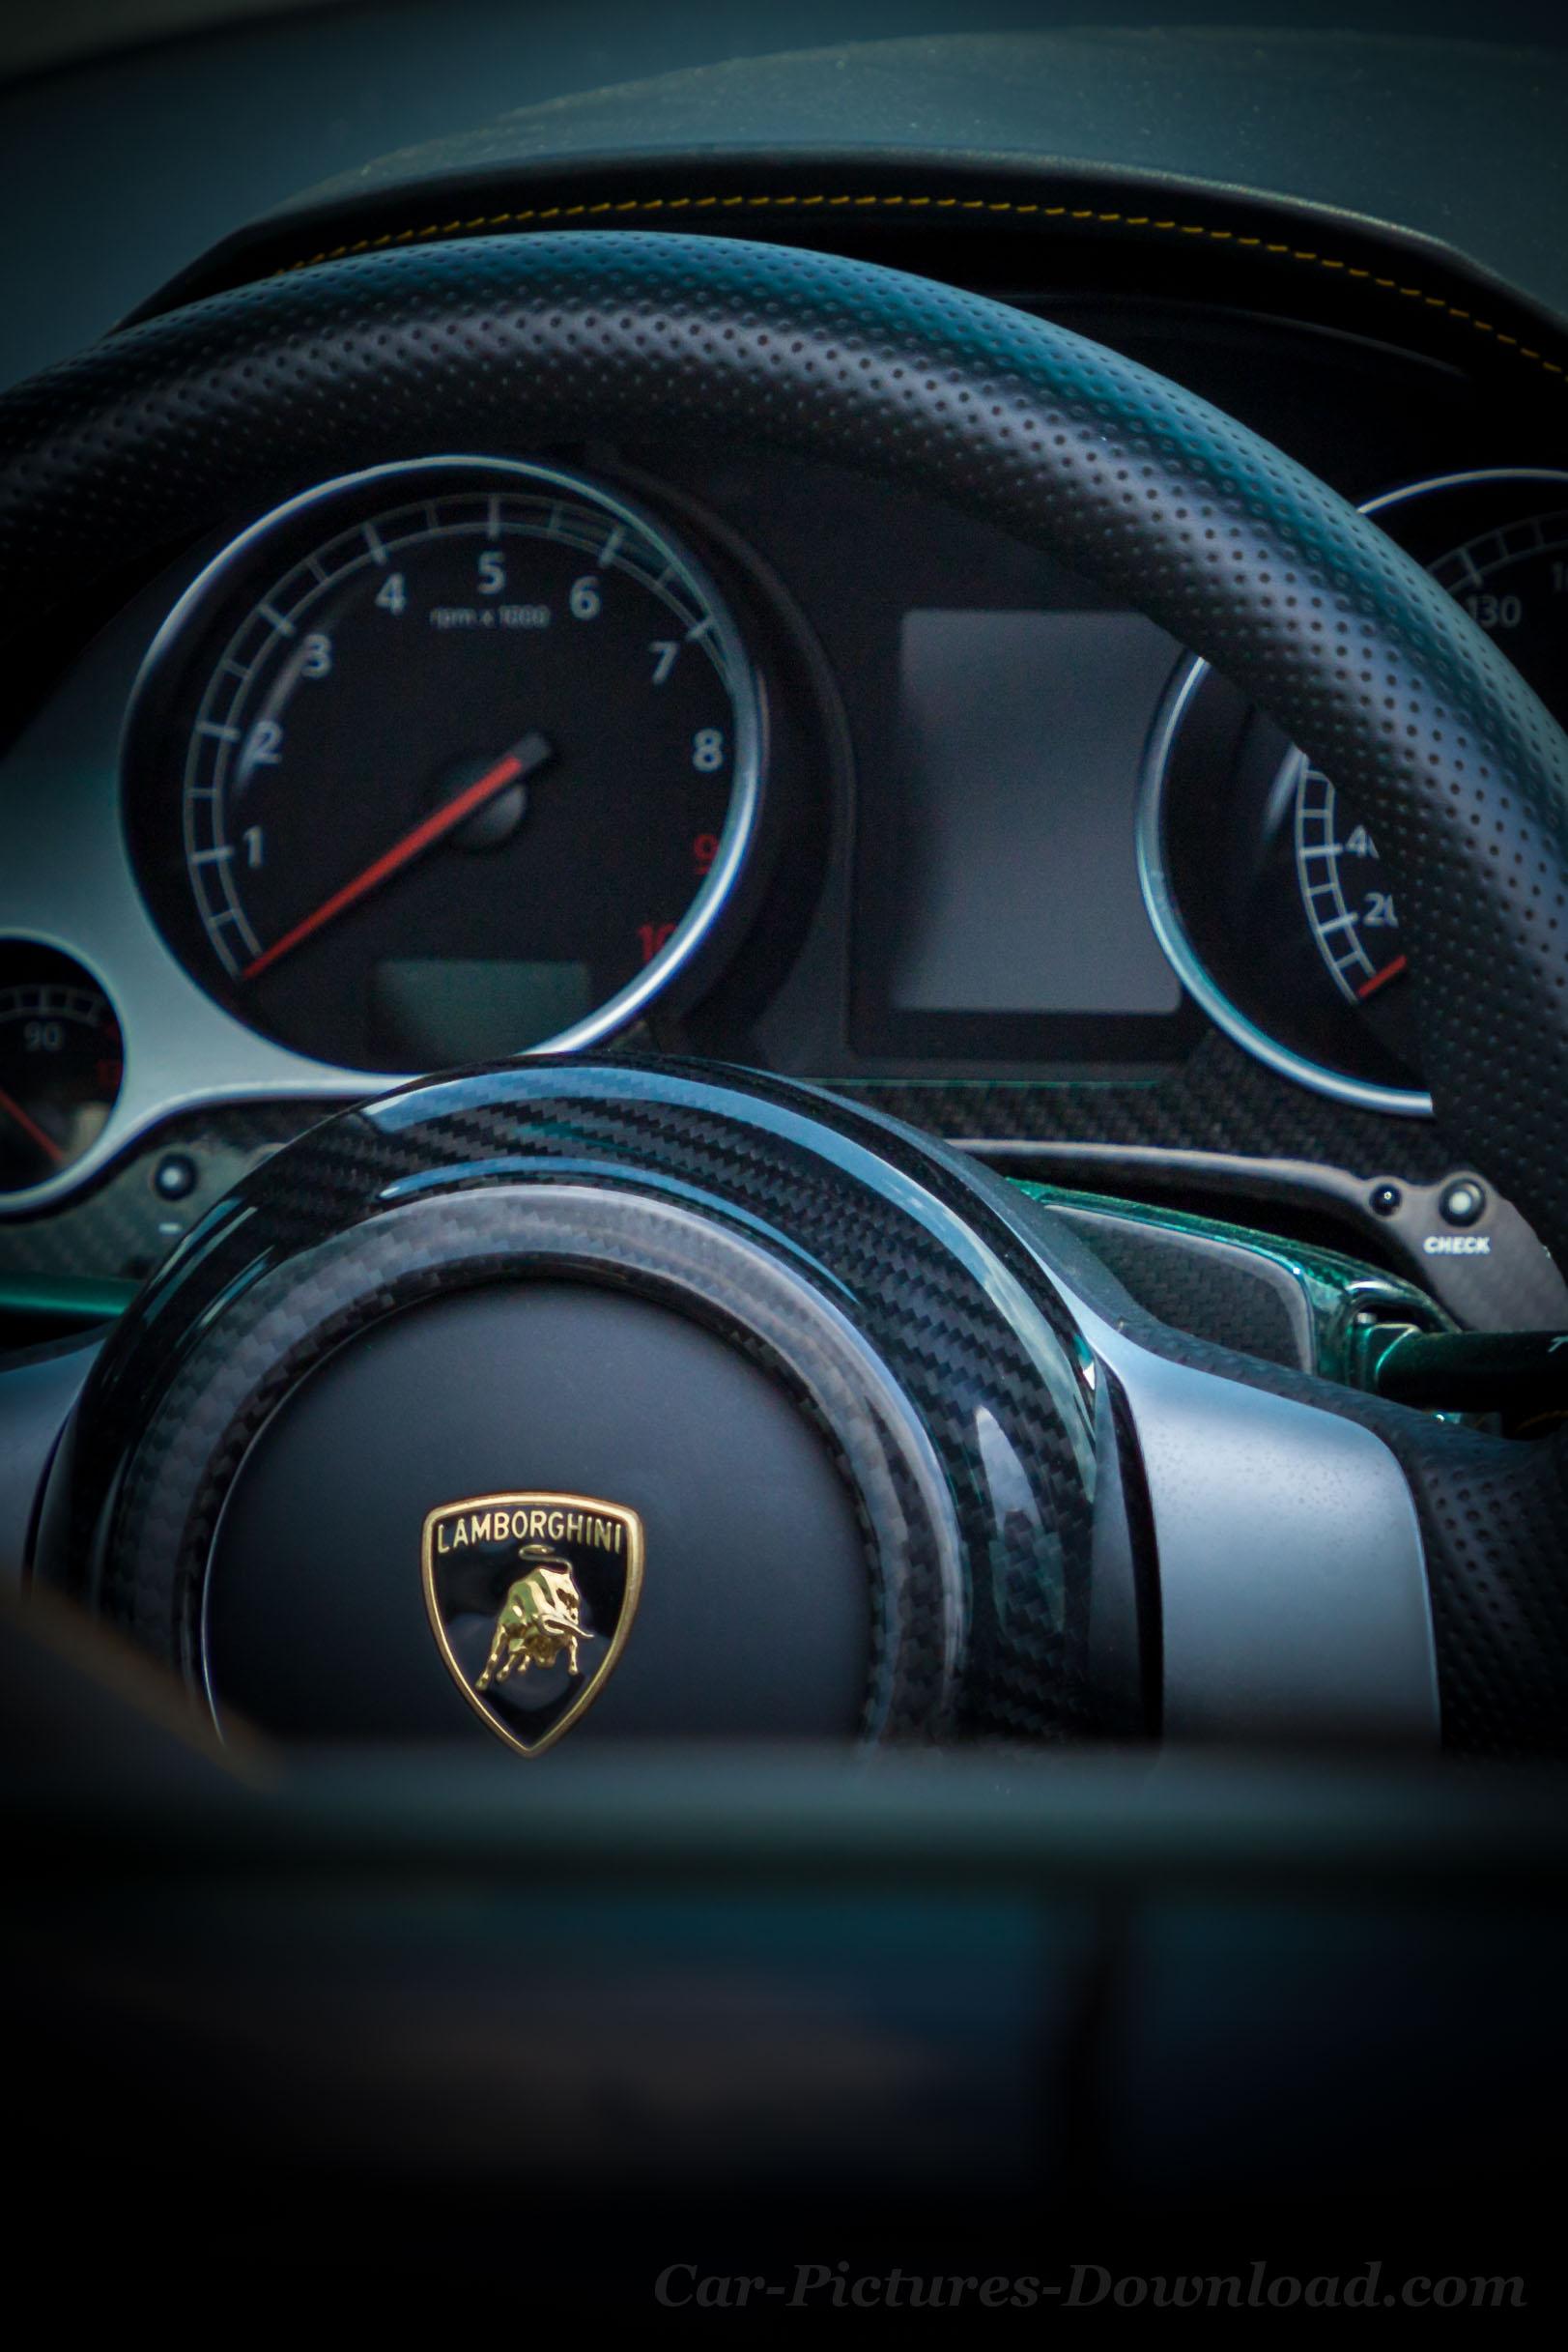 Lamborghini Wallpapers Image